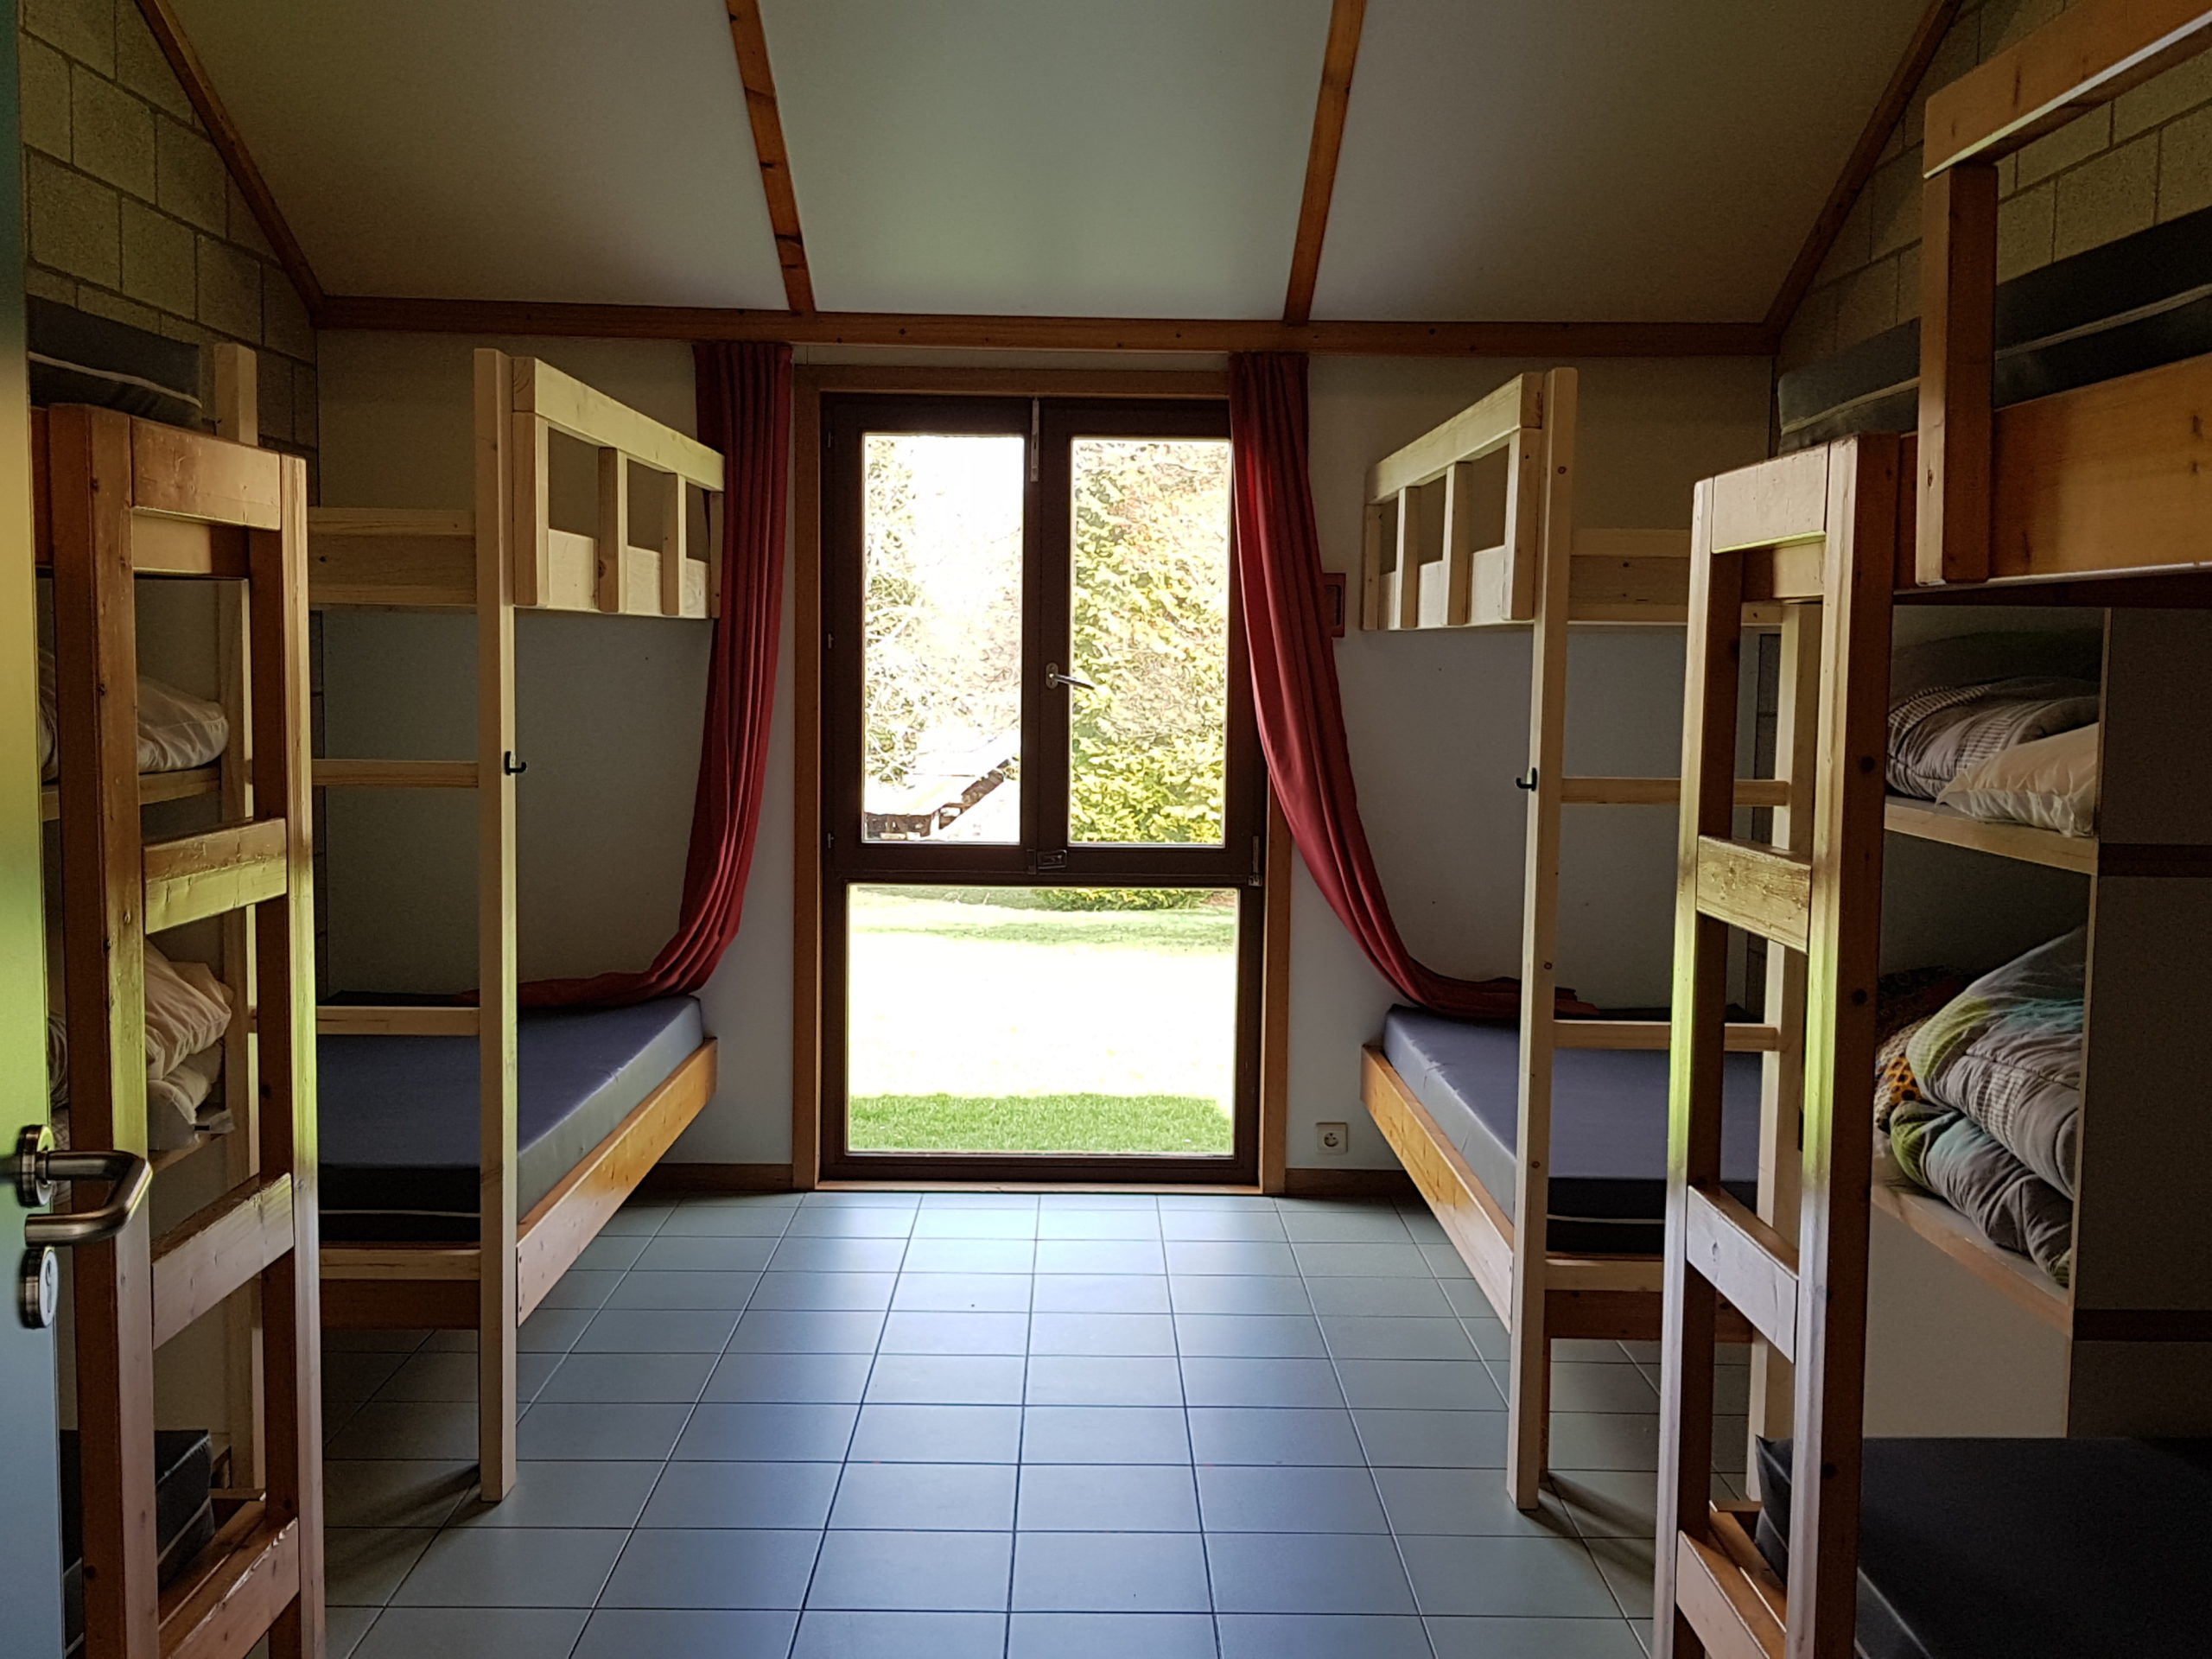 Hébergement : Chambre de 8 lits dans les pavillons